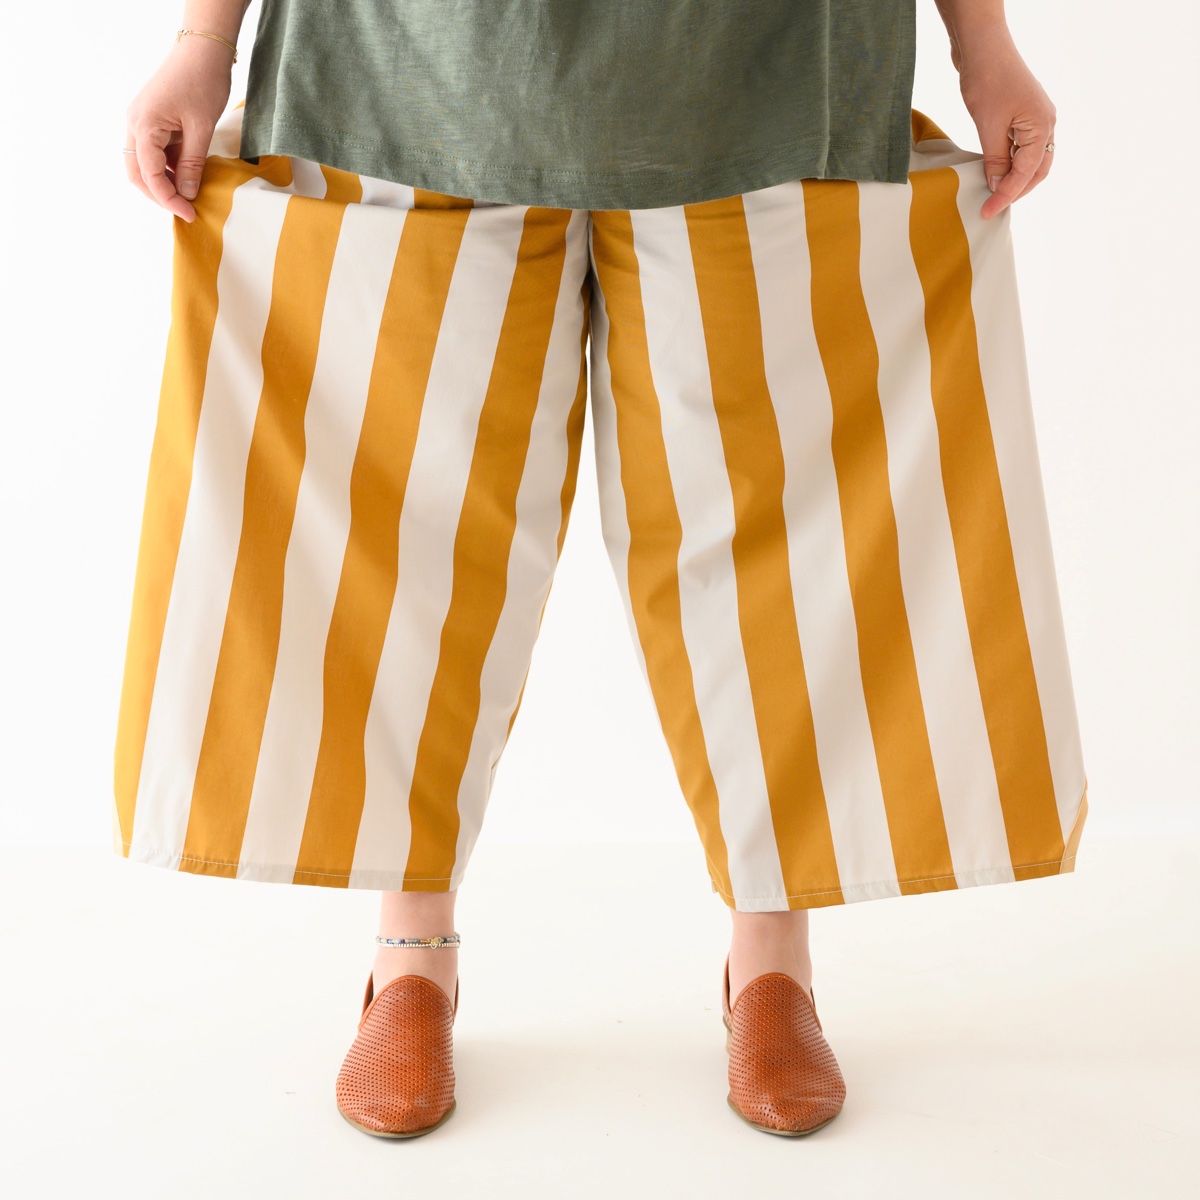 מכנסיים מדגם נועה עם הדפס פסים בצבע חרדל ובז׳ - זוגות אחרונים במלאי במידה 12